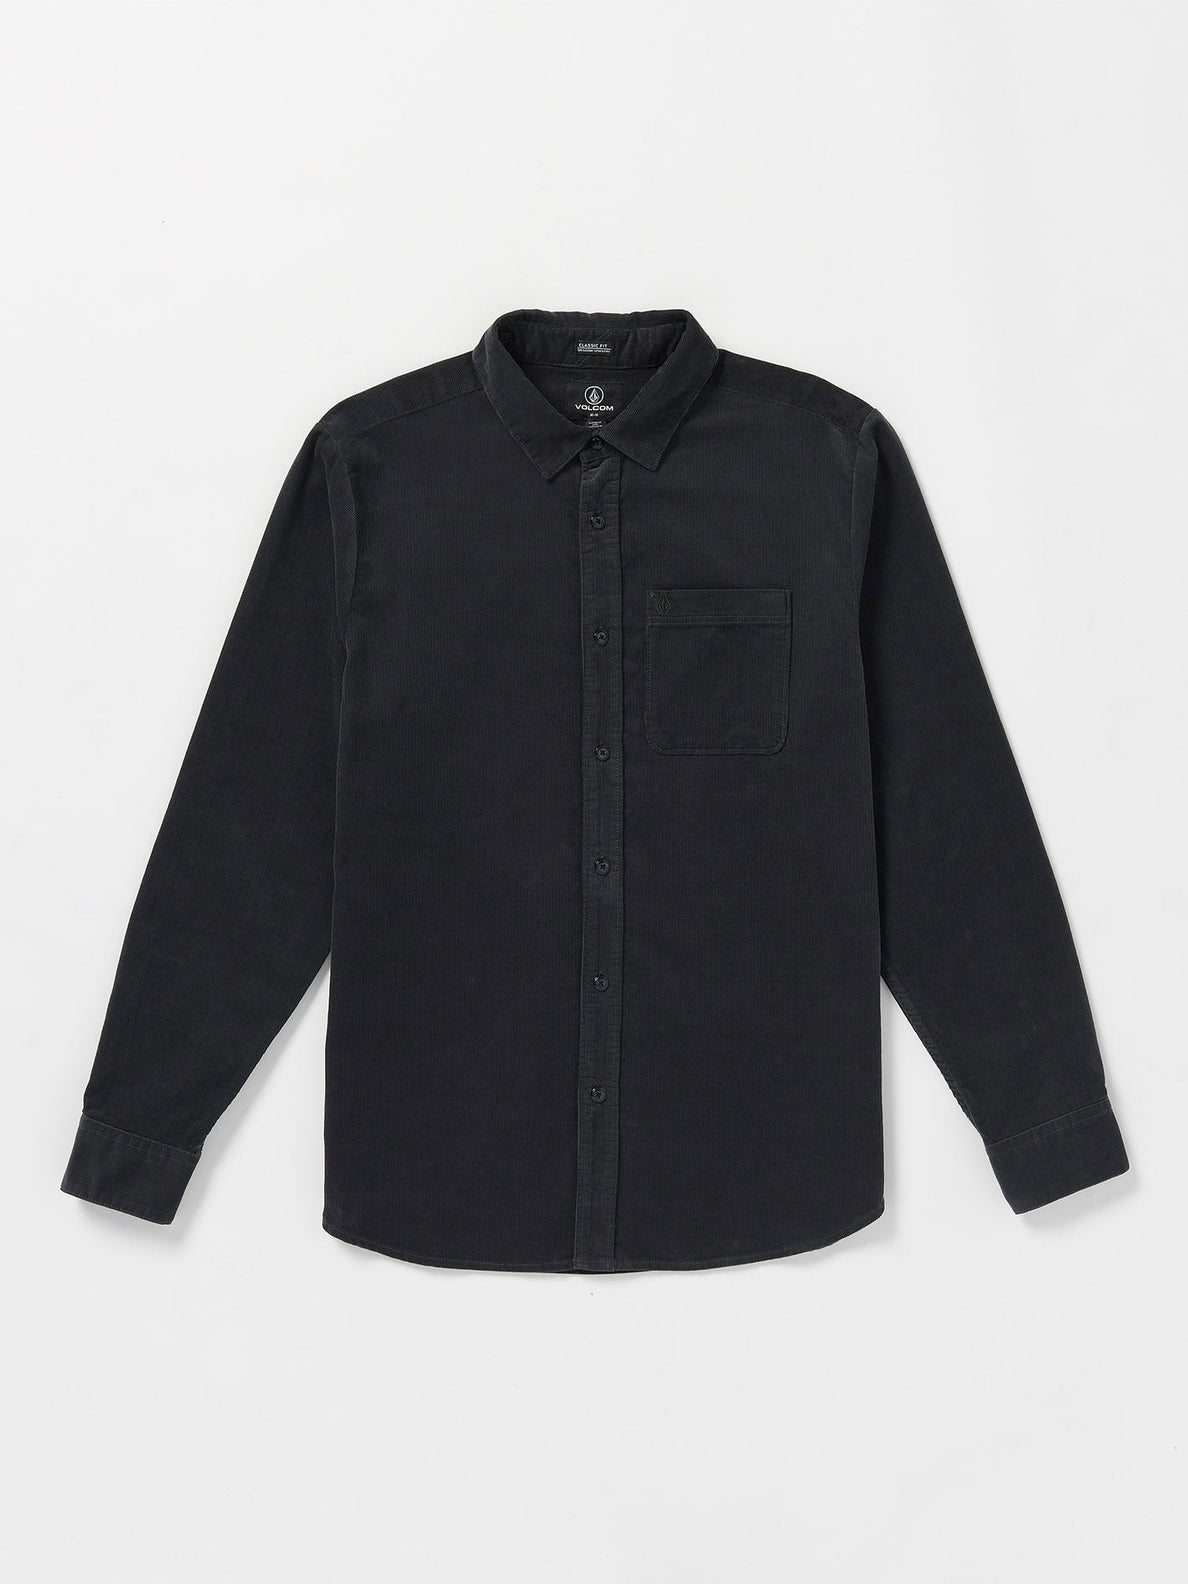 Zander Shirt - Asphalt Black